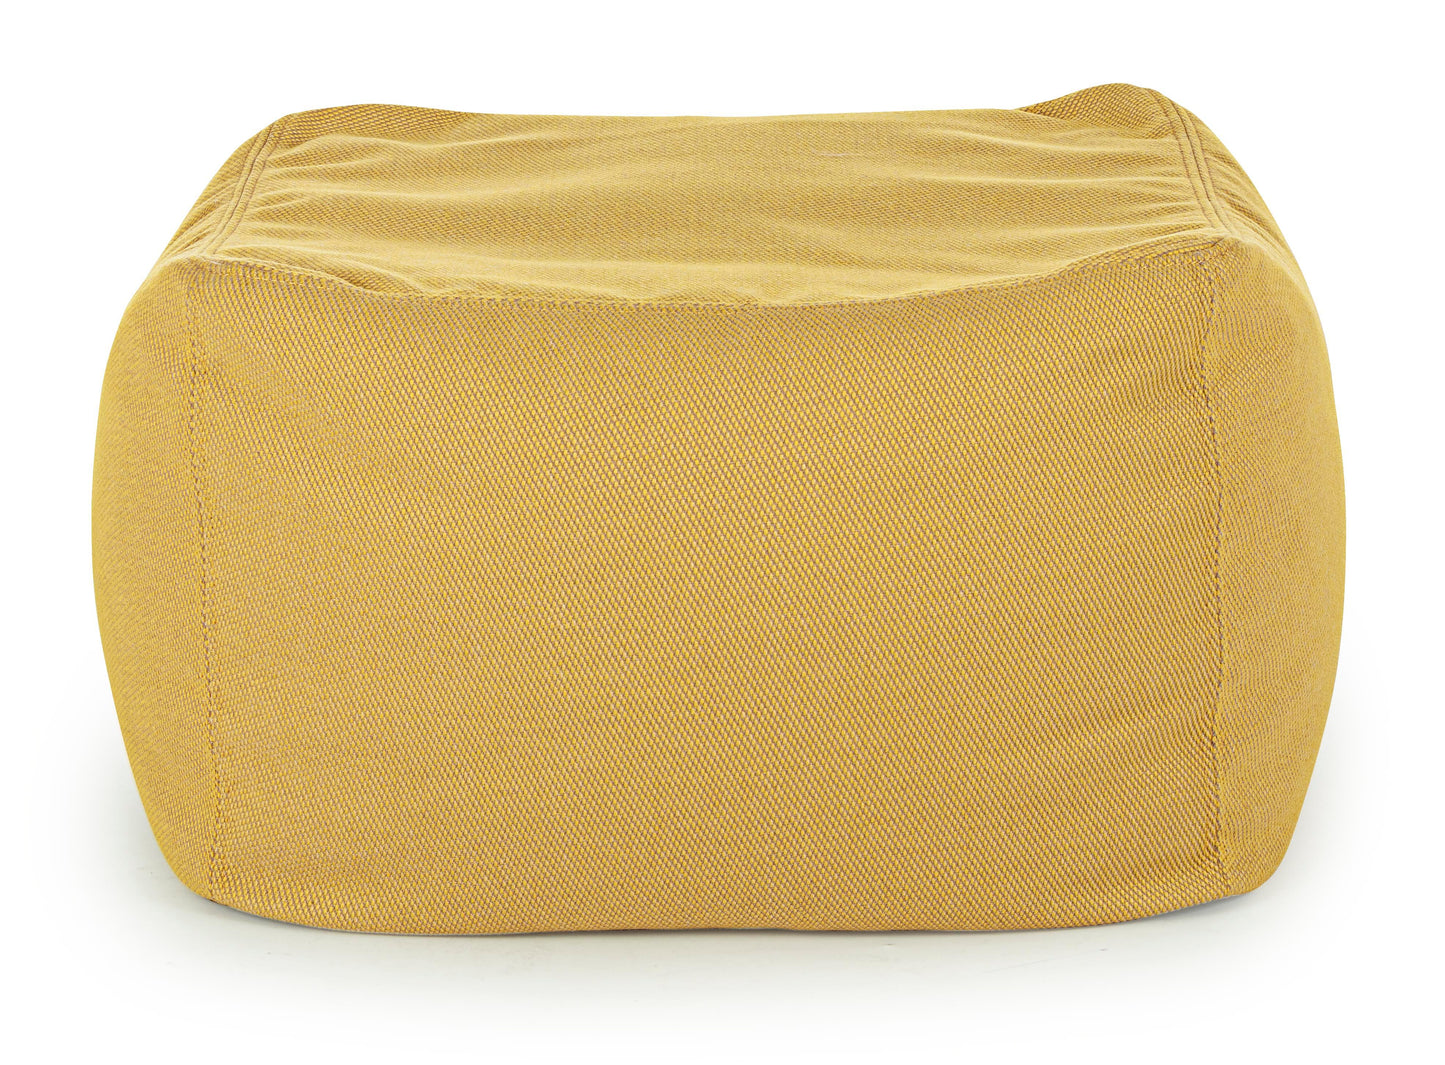 Pouf 50x50 in tessuto sfoderabile per esterni - 4 colori disponibili, GIALLO CEDRO-lapagoda.net